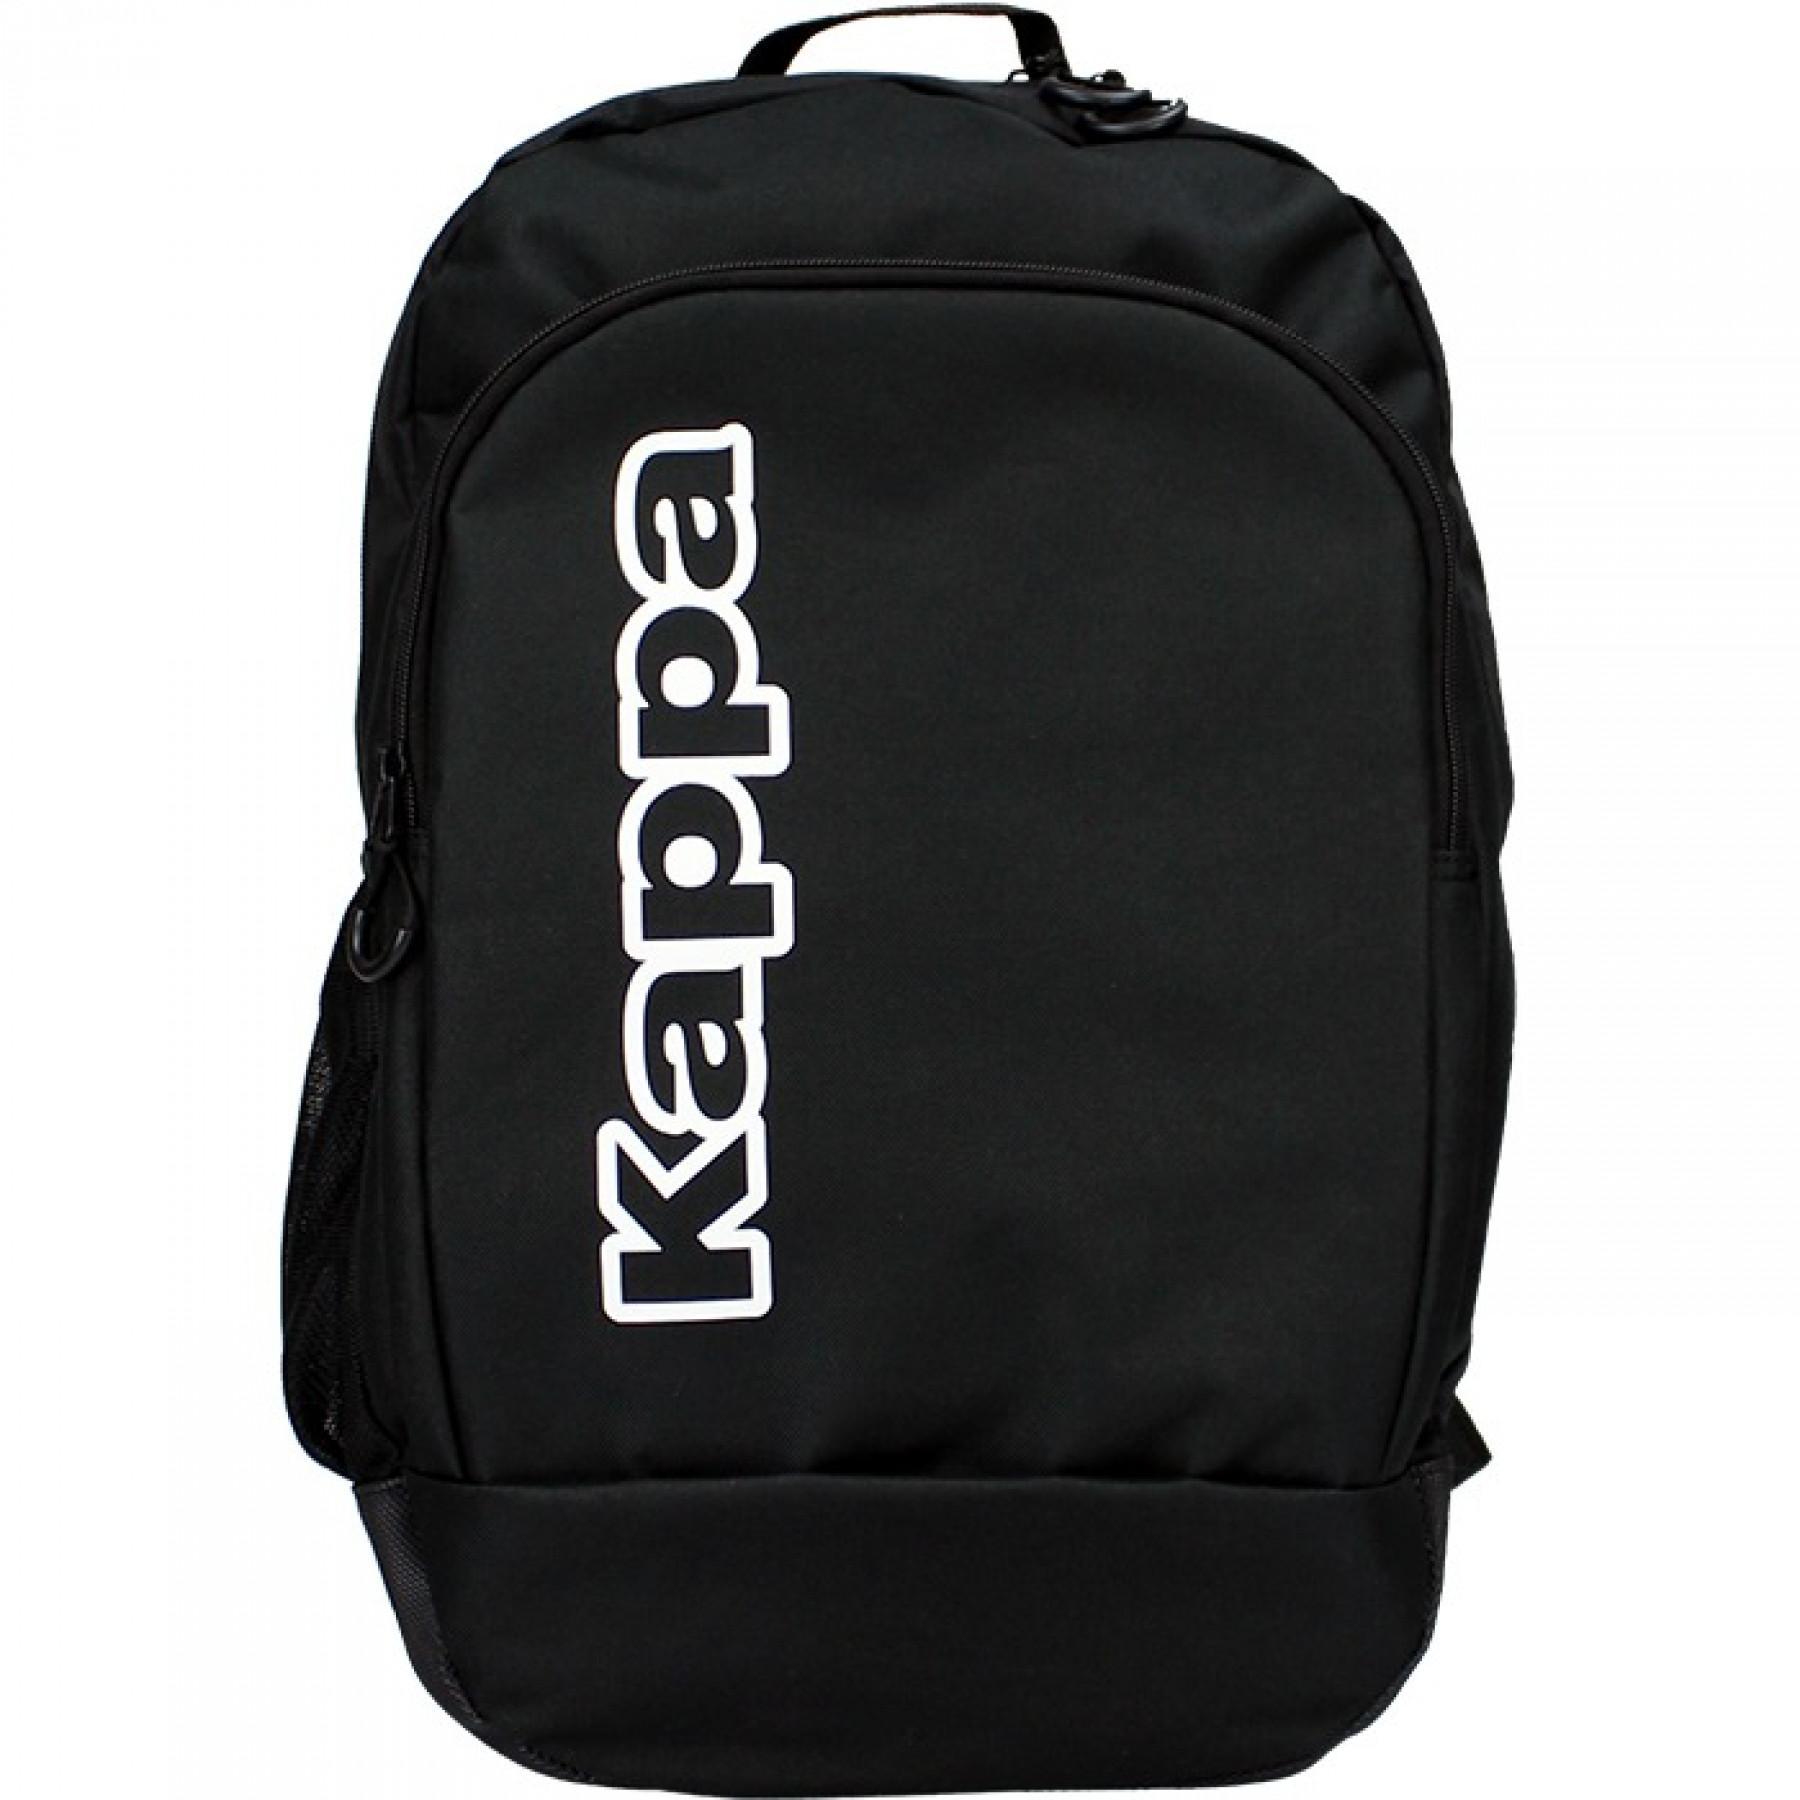 In de genade van vuist romantisch Backpack Kappa Lamberto - Backpacks - Bags - Equipment